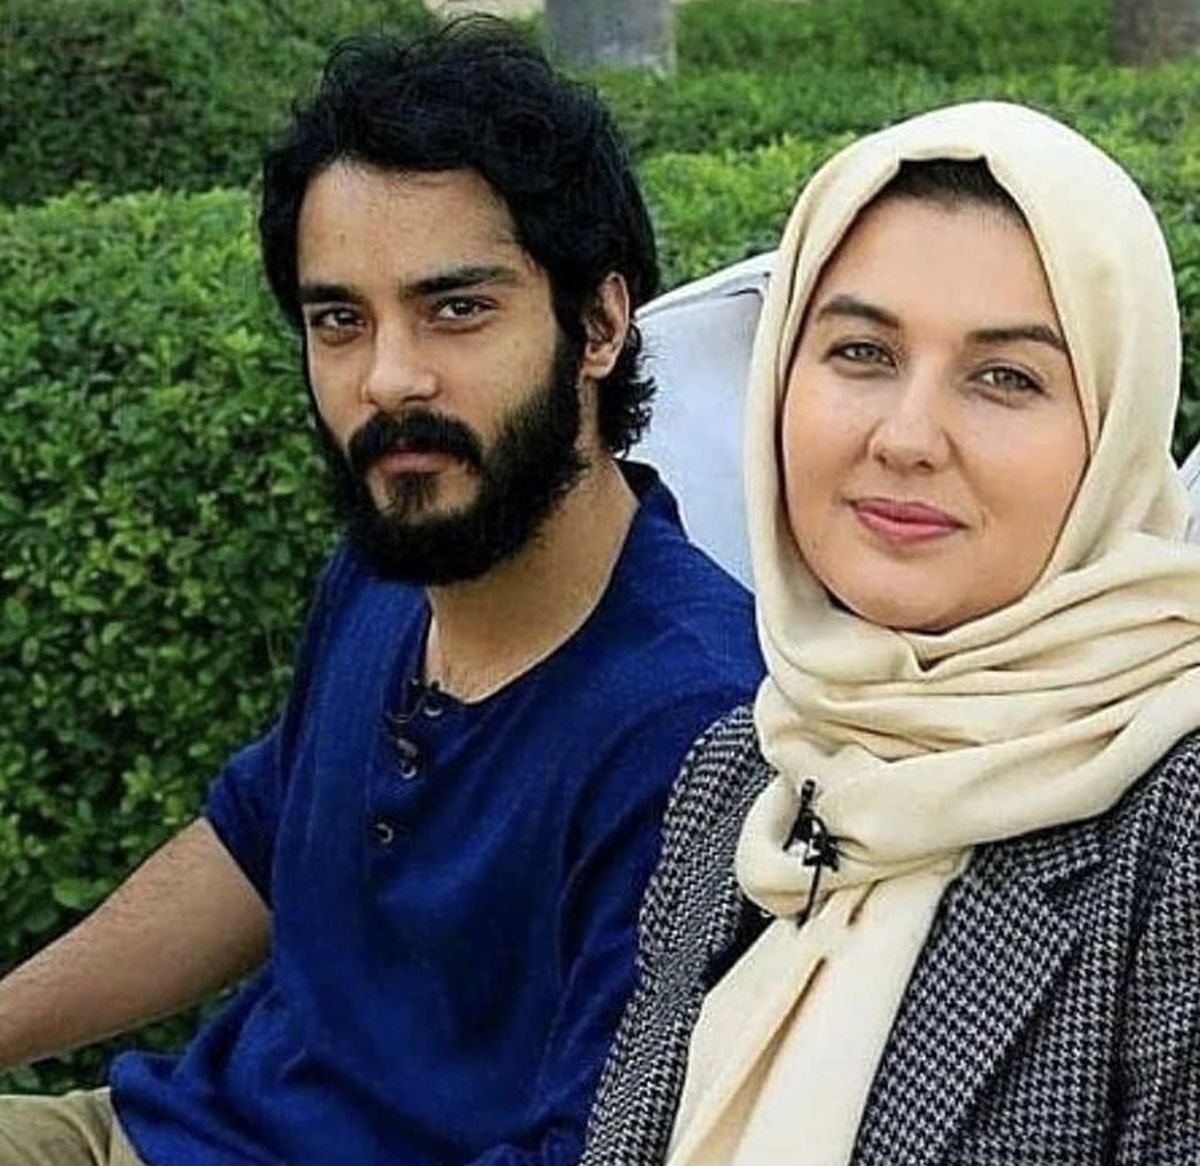 ماجرای عجیب آشنایی ساعد سهیلی با همسر خارجی اش + فیلم